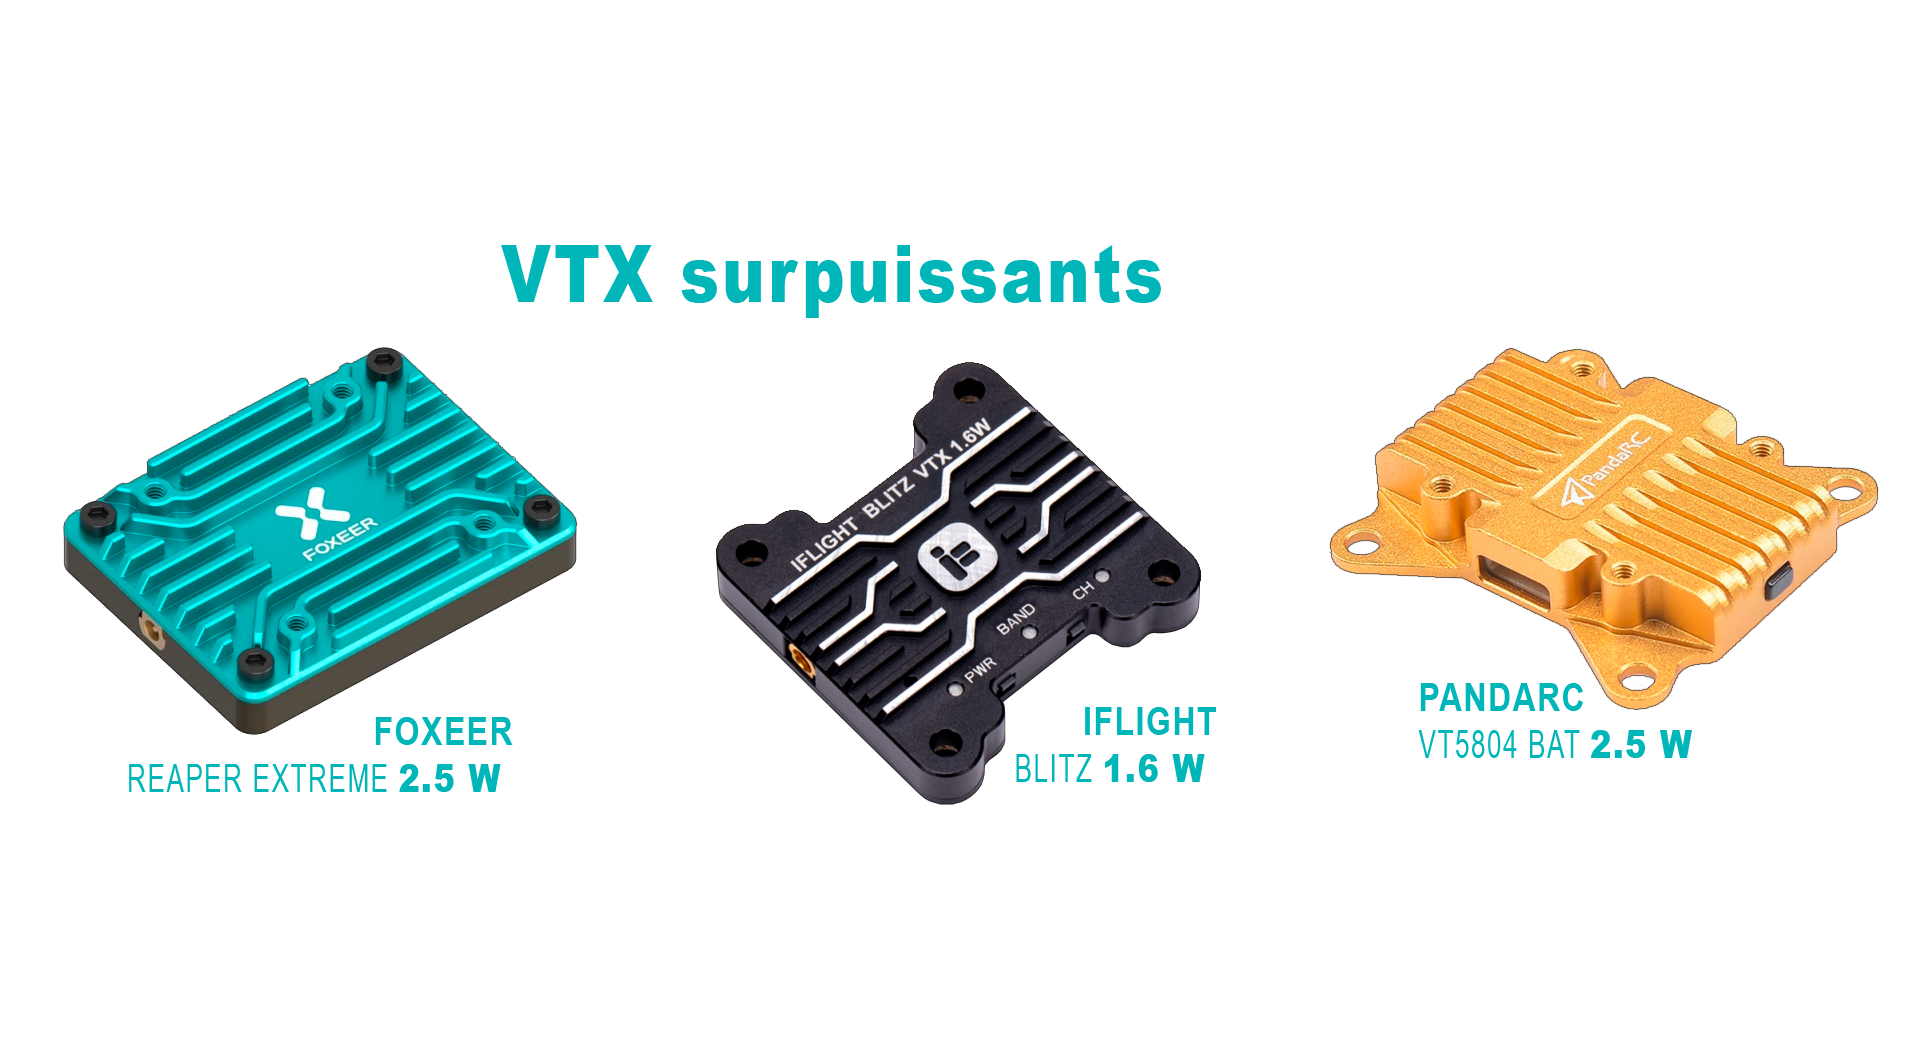 VTX surpuissants